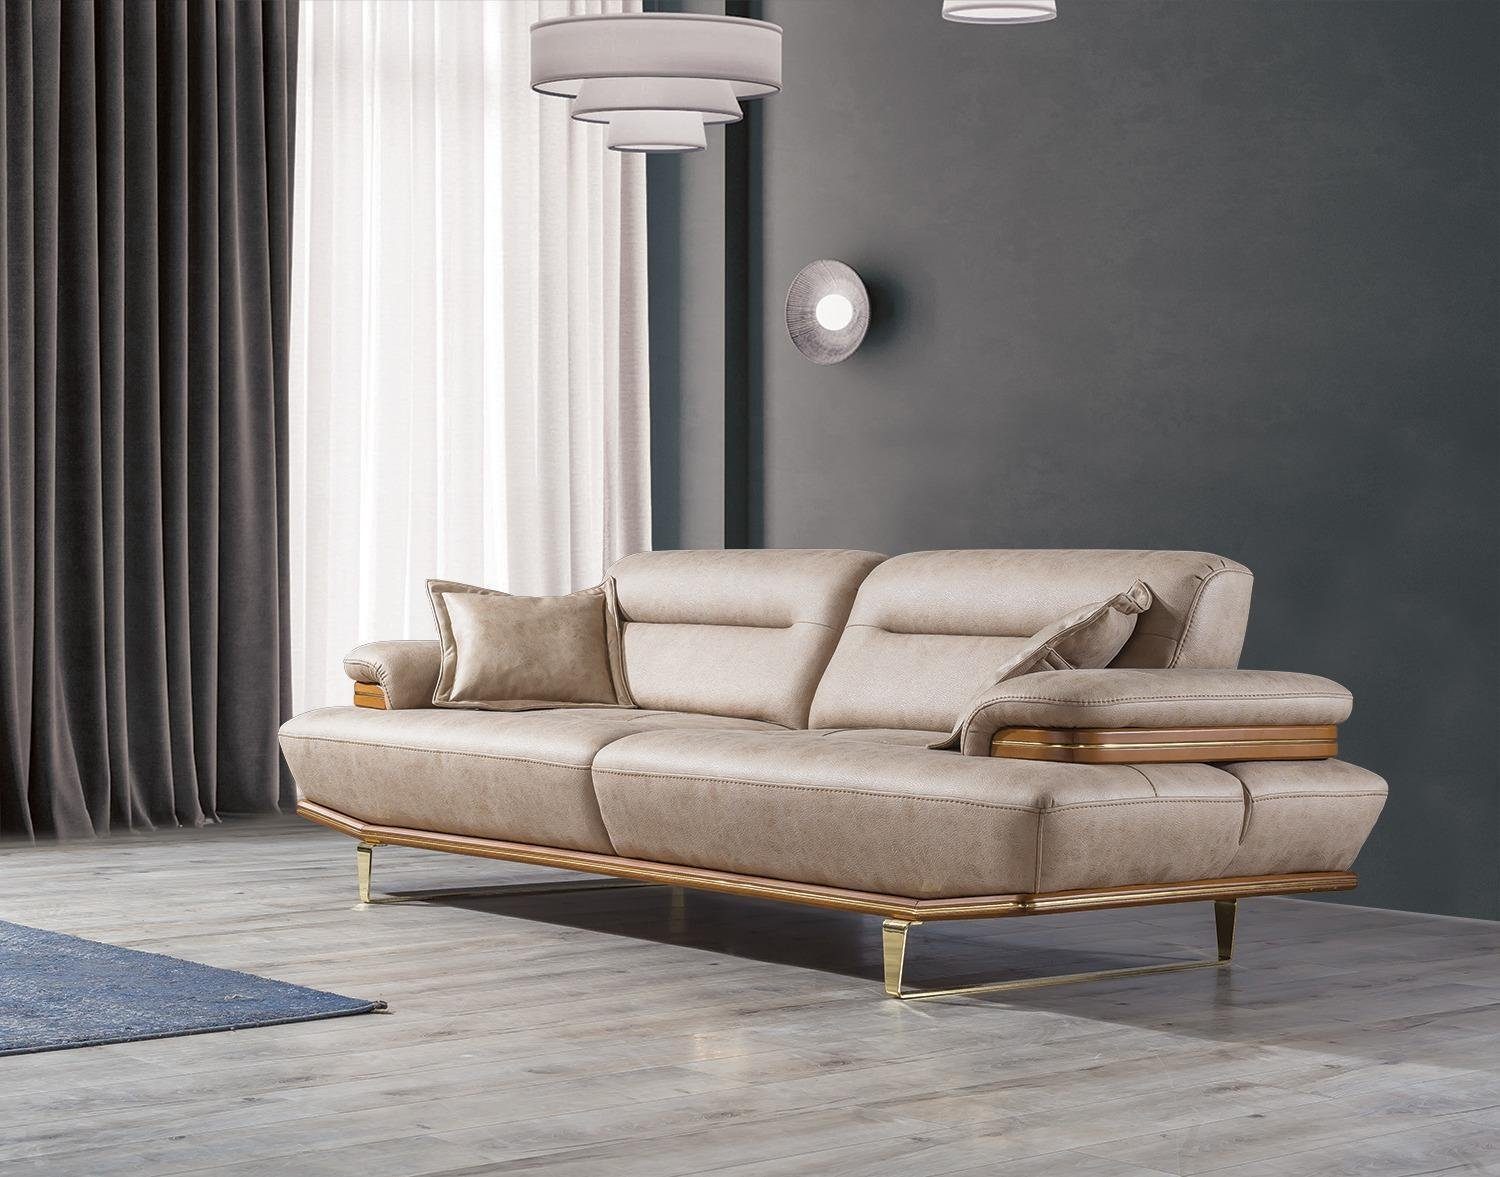 JVmoebel Sofa Dreisitzer Couch Polster Design Sofa Moderne Beige Luxus Möbel Neu, 1 Teile, Made in Europa